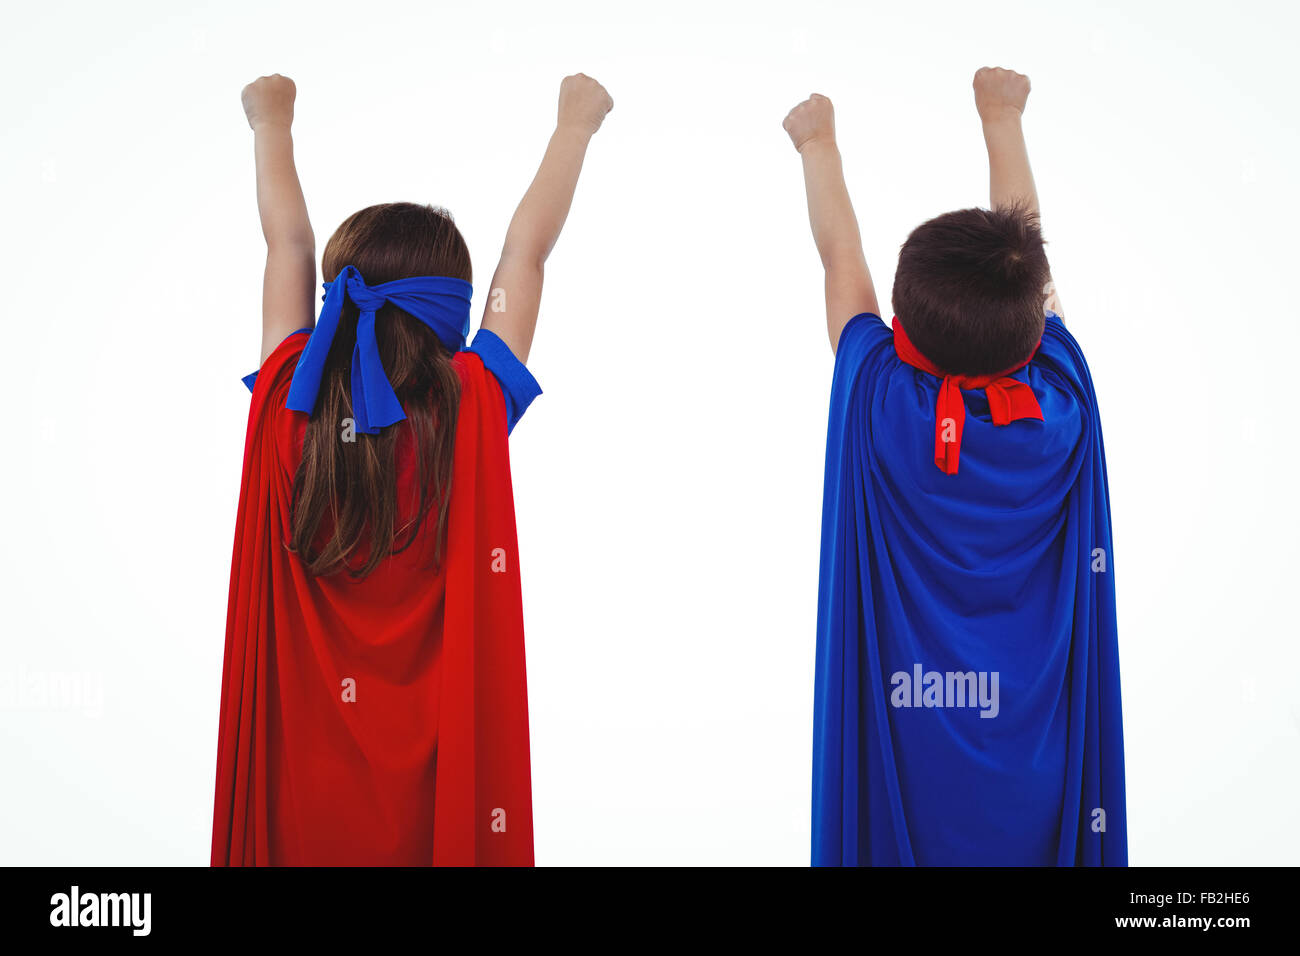 Les enfants masqués se faisant passer pour des super-héros Banque D'Images